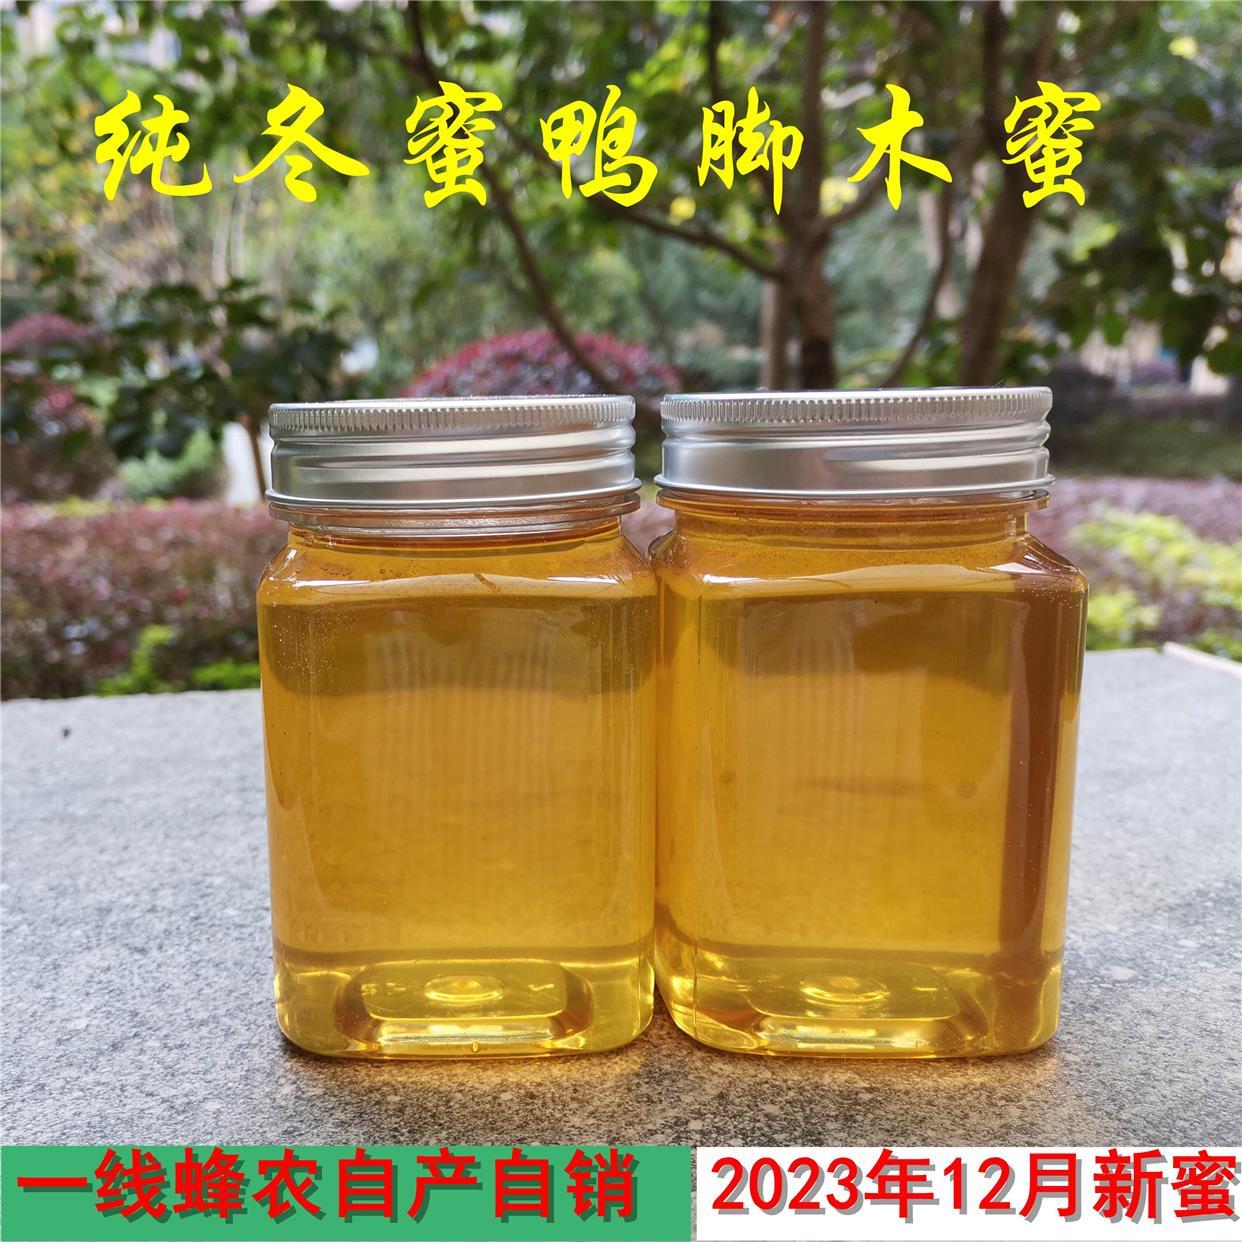 2023年12月冬蜜中蜂纯土蜂蜜鸭脚木蜜全封盖成熟蜂蜜绿湖蜂农